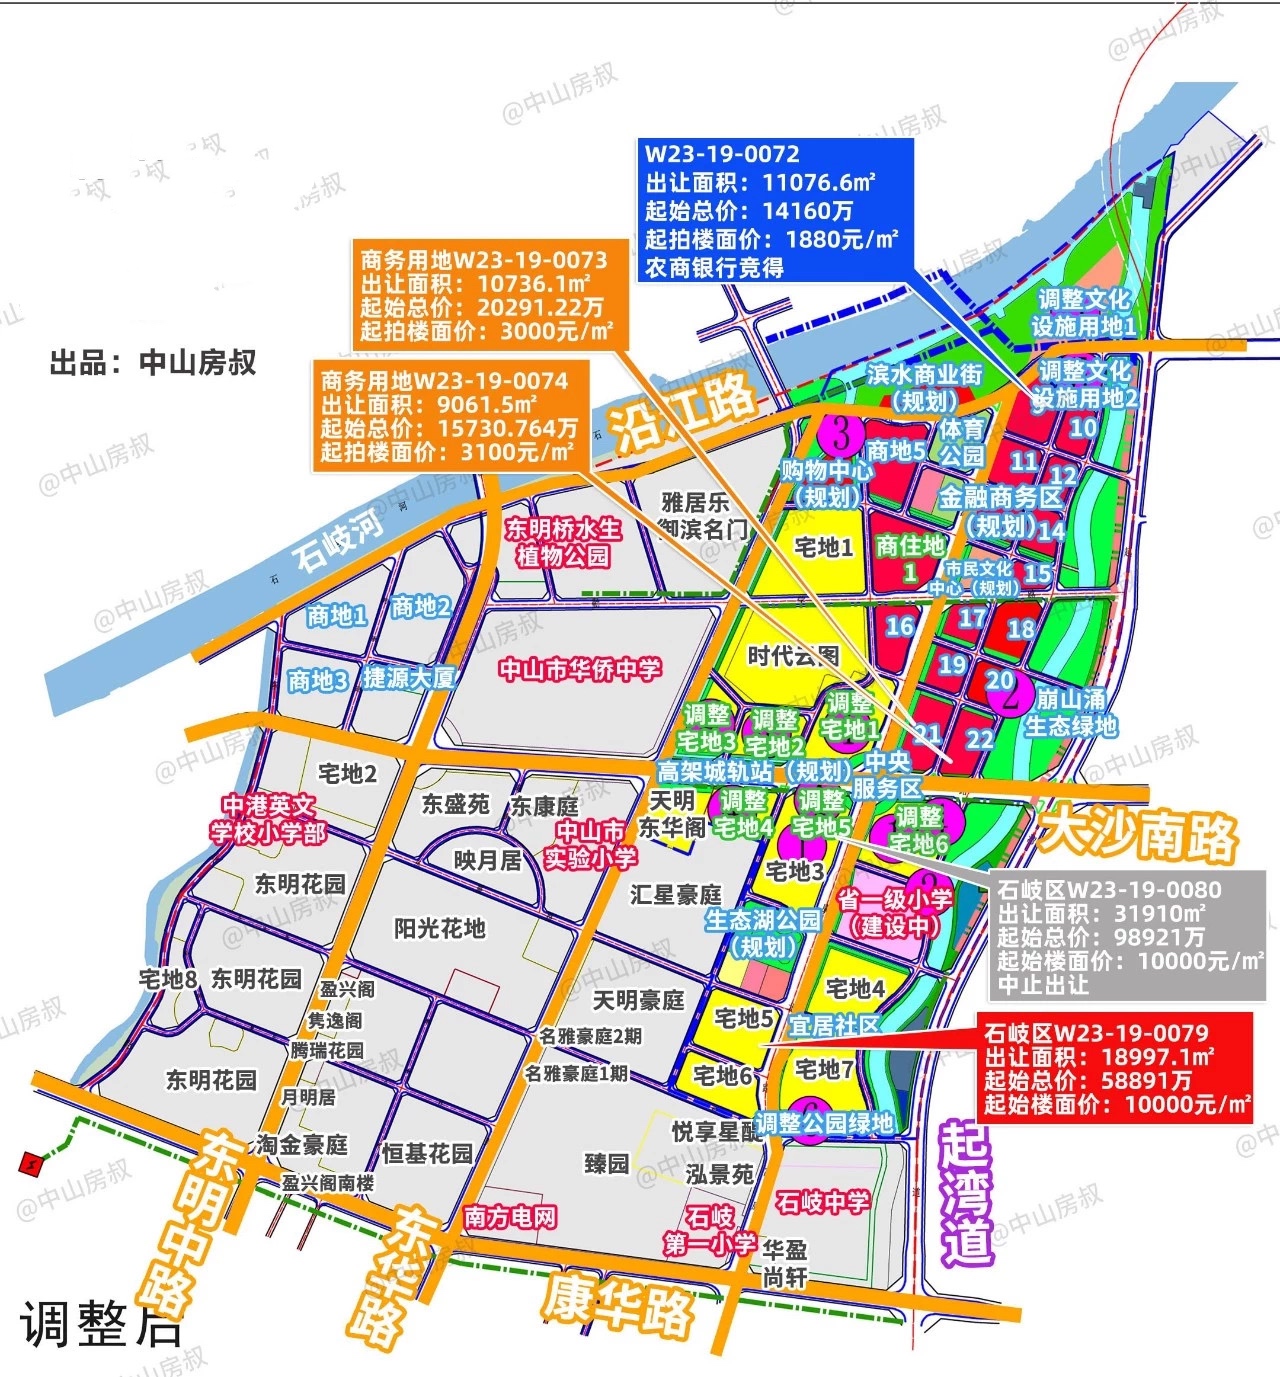 中山岐江新城规划范围图片